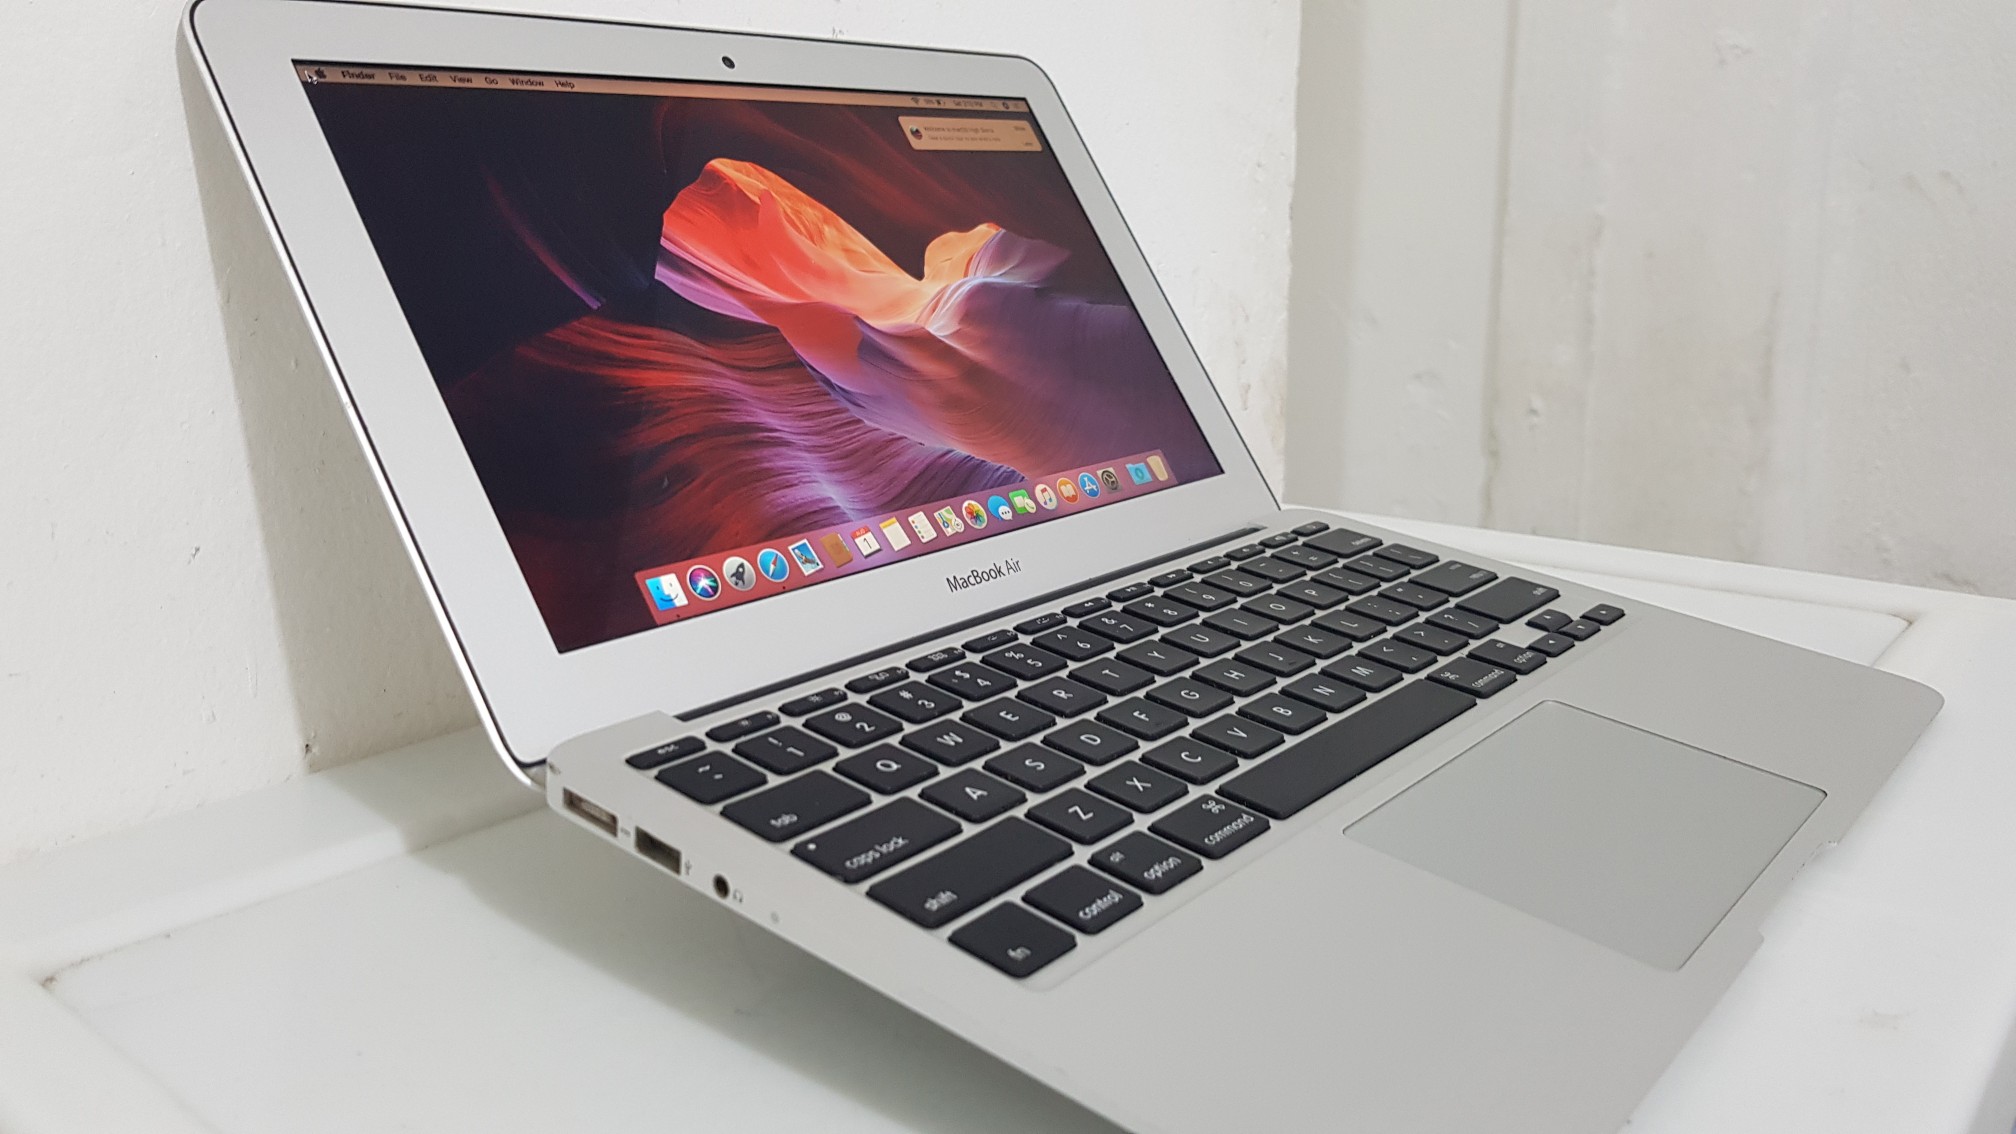 computadoras y laptops - Macbook Air 13.3 Pulg Core i5 Ram 4gb Disco 128gb Año 2015 1